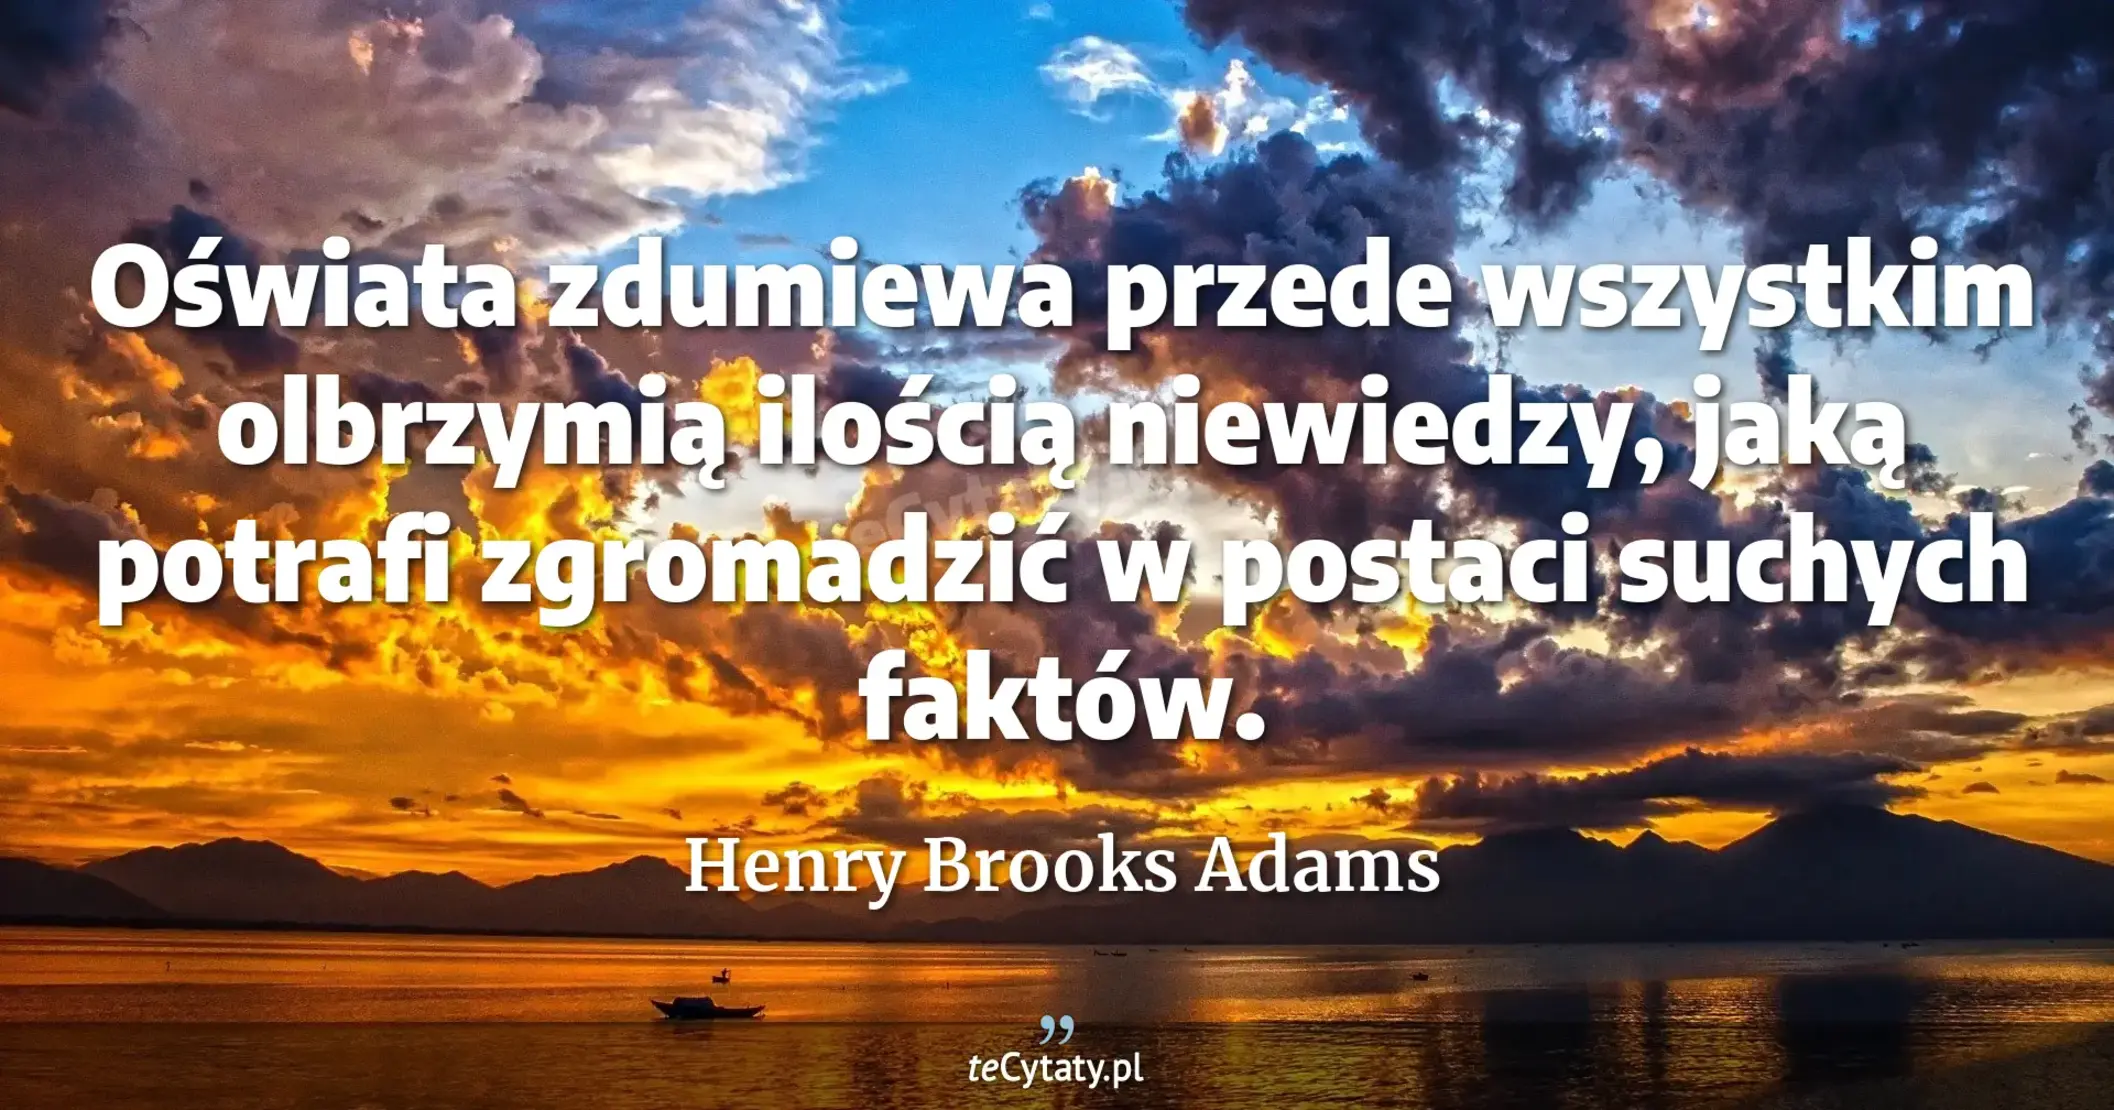 Oświata zdumiewa przede wszystkim olbrzymią ilością niewiedzy, jaką potrafi zgromadzić w postaci suchych faktów. - Henry Brooks Adams